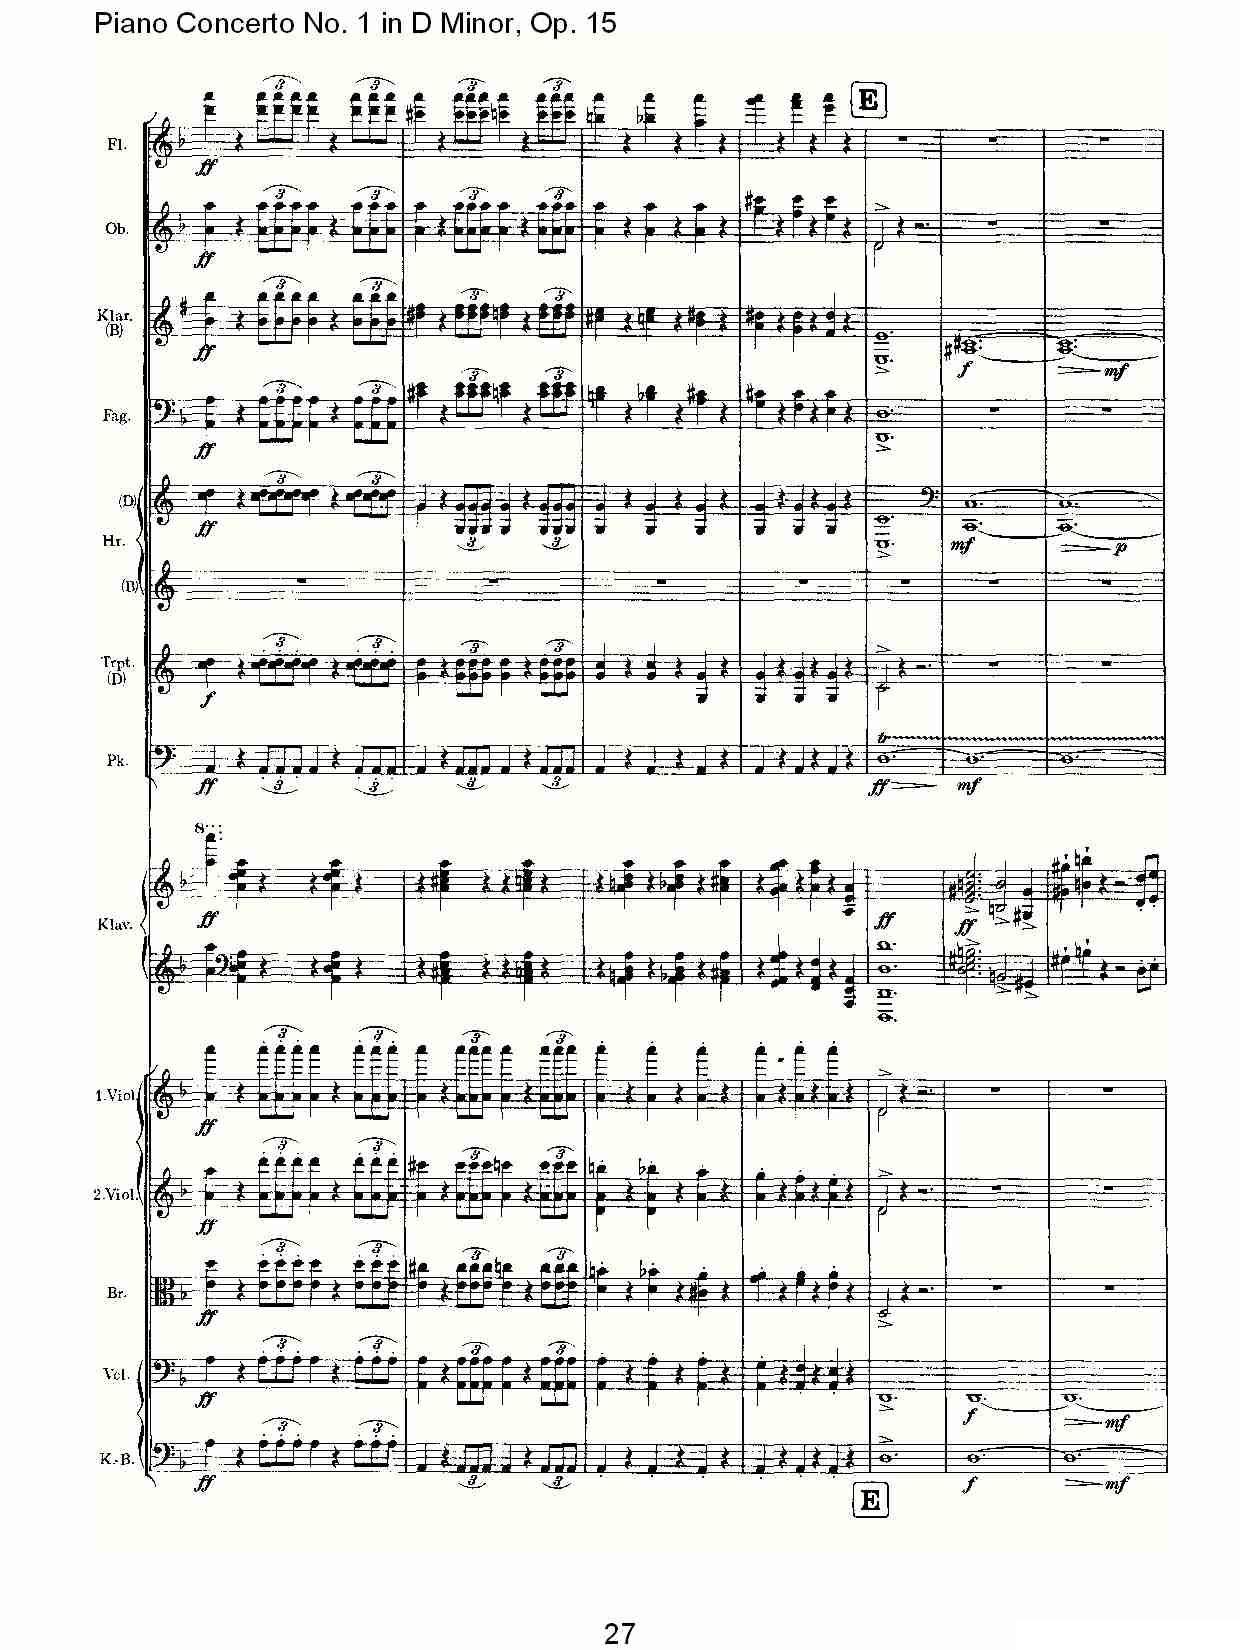 D小调钢琴第一协奏曲, Op.15第一乐章（一）钢琴曲谱（图27）